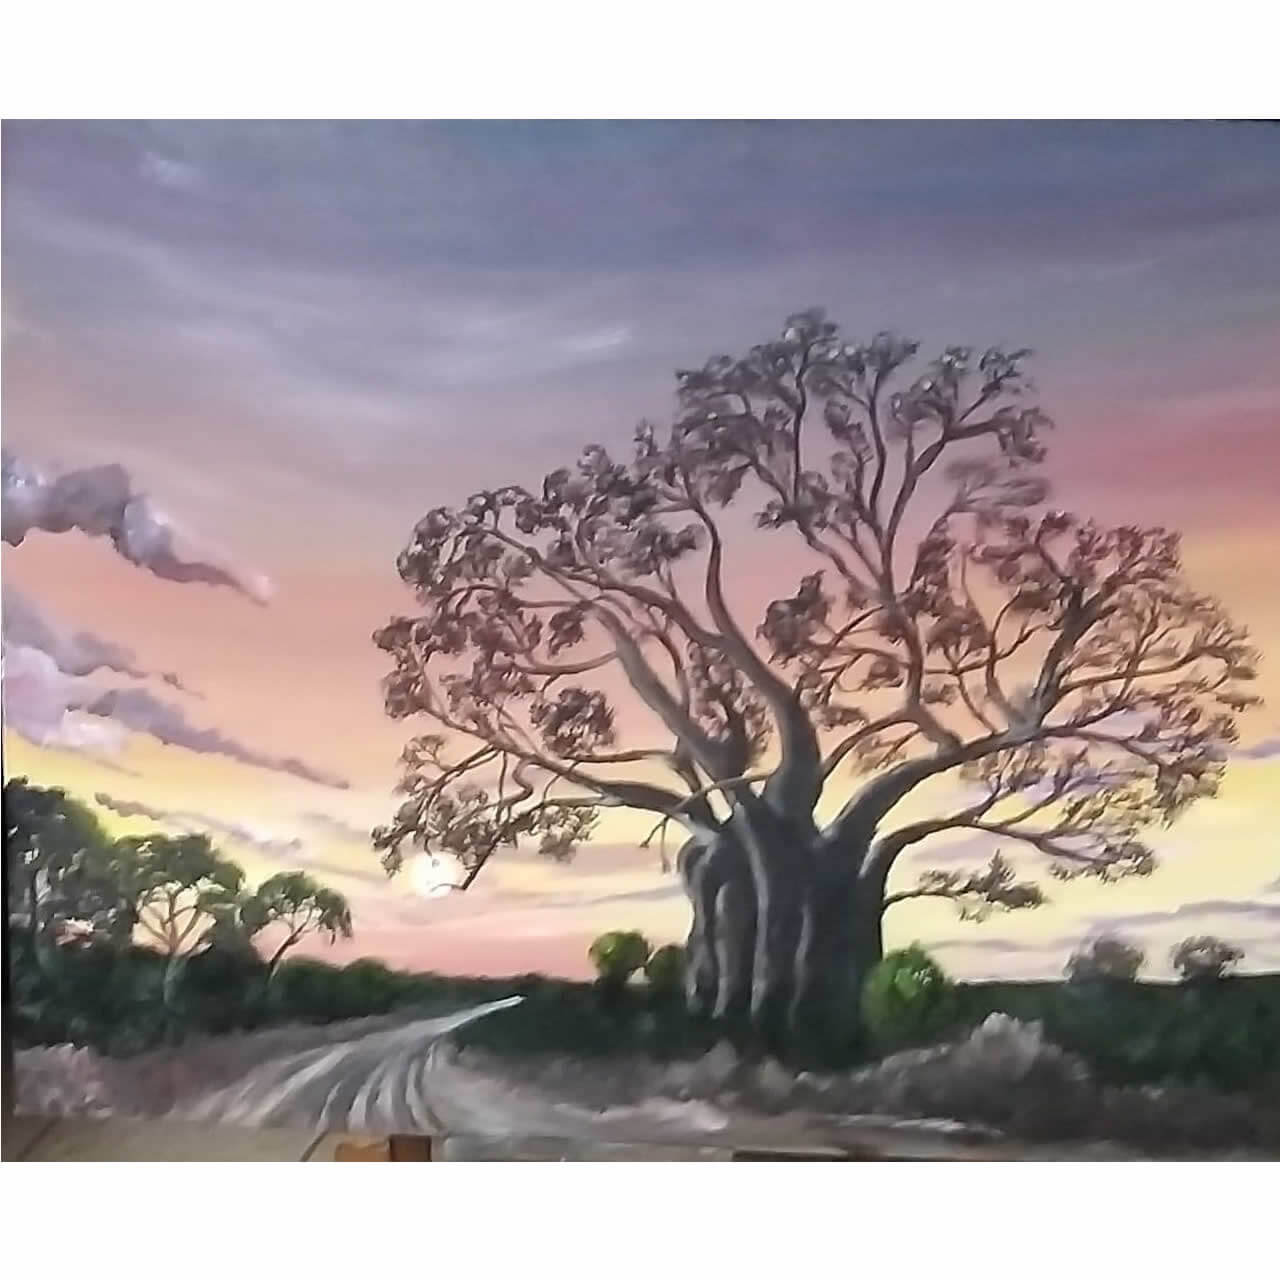 baobab tree sunset